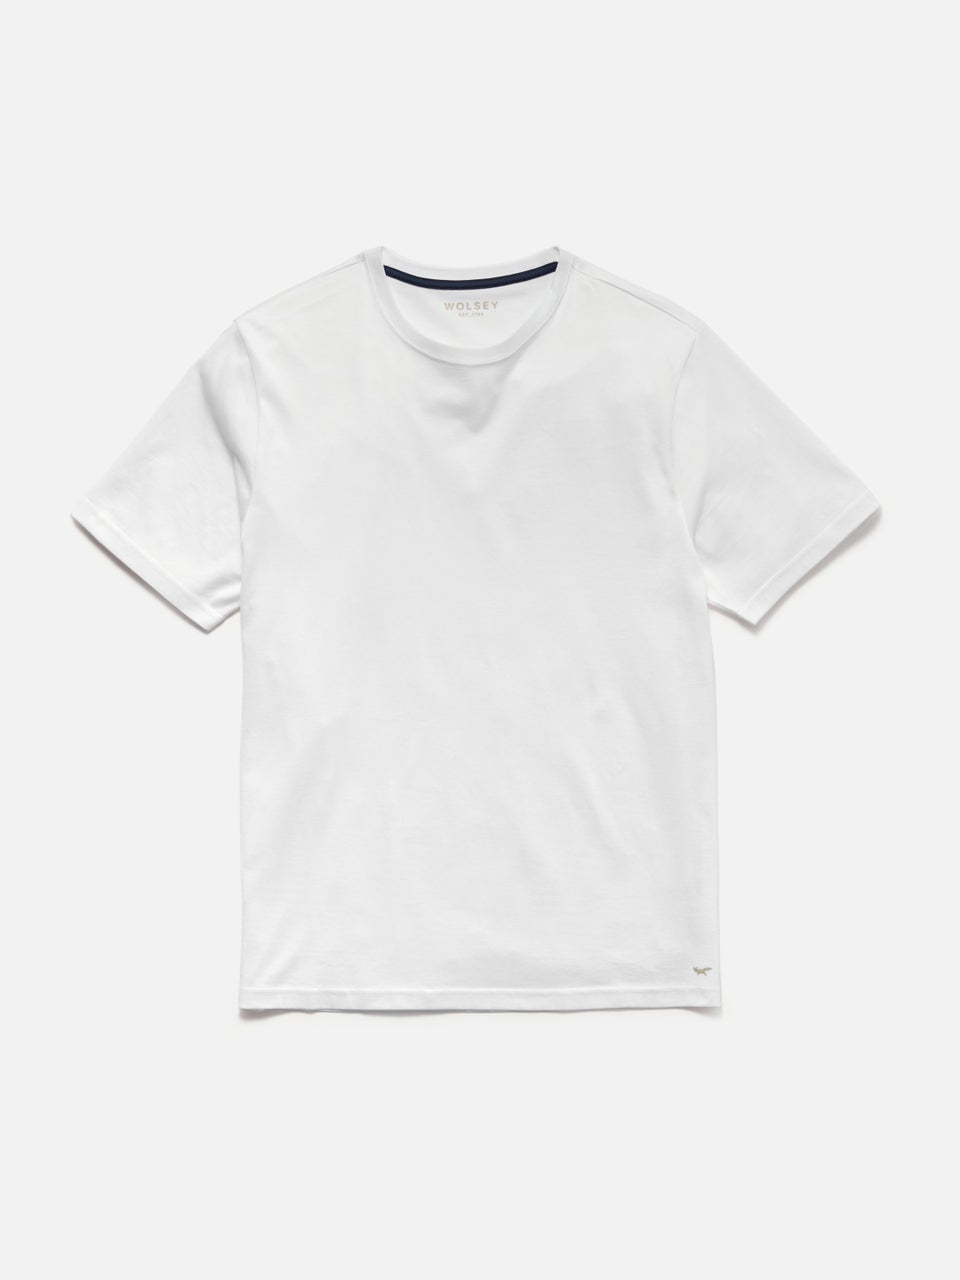 Premium Essential T-shirt White - S